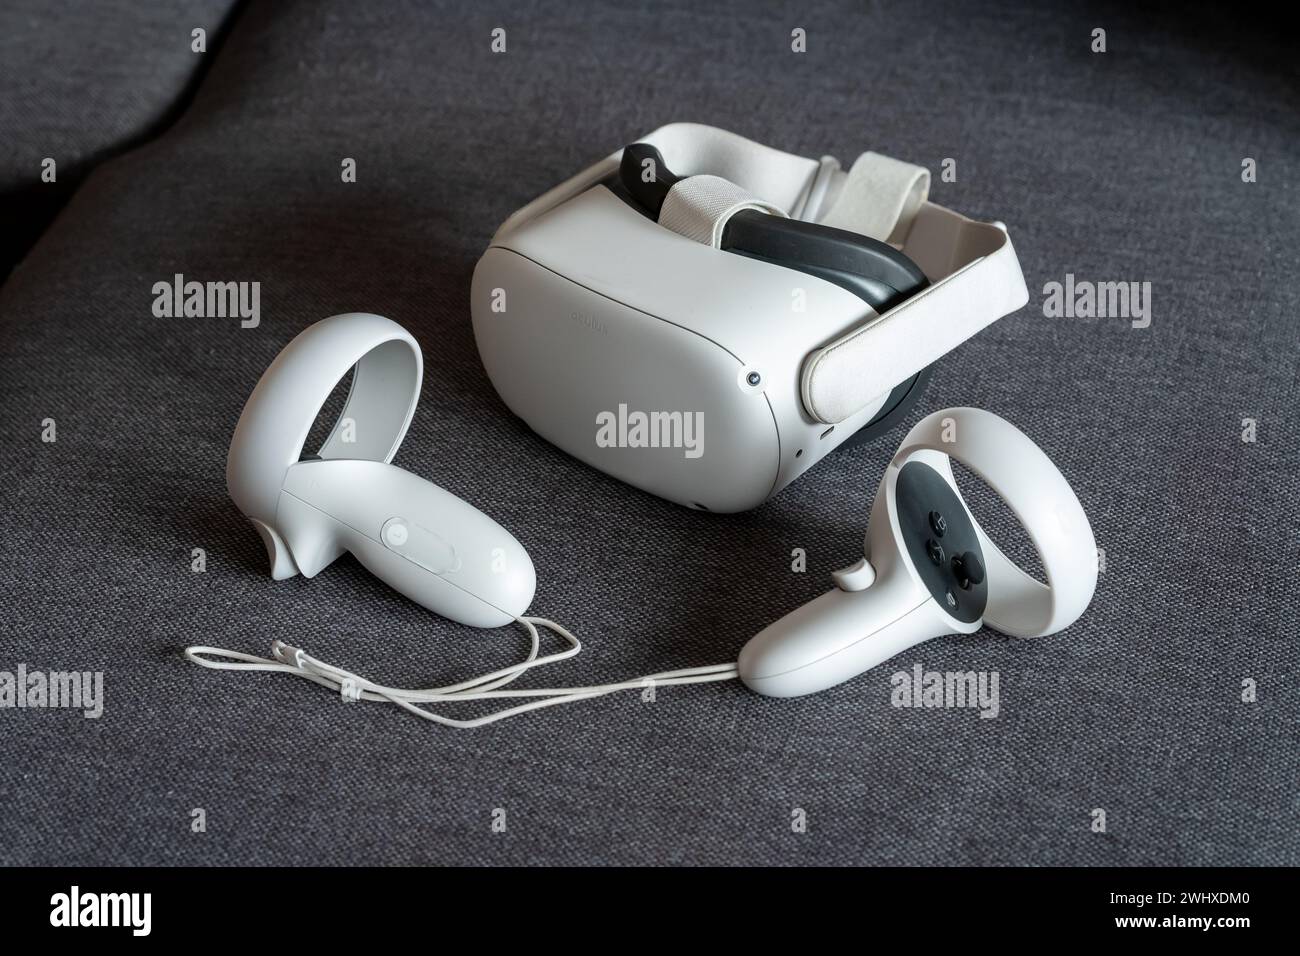 Casque de réalité virtuelle Meta Quest 2 avec manettes sur un canapé. Jeux et expériences VR autonomes sans fil et filaires, technologie Metaverse, VR Gami Banque D'Images